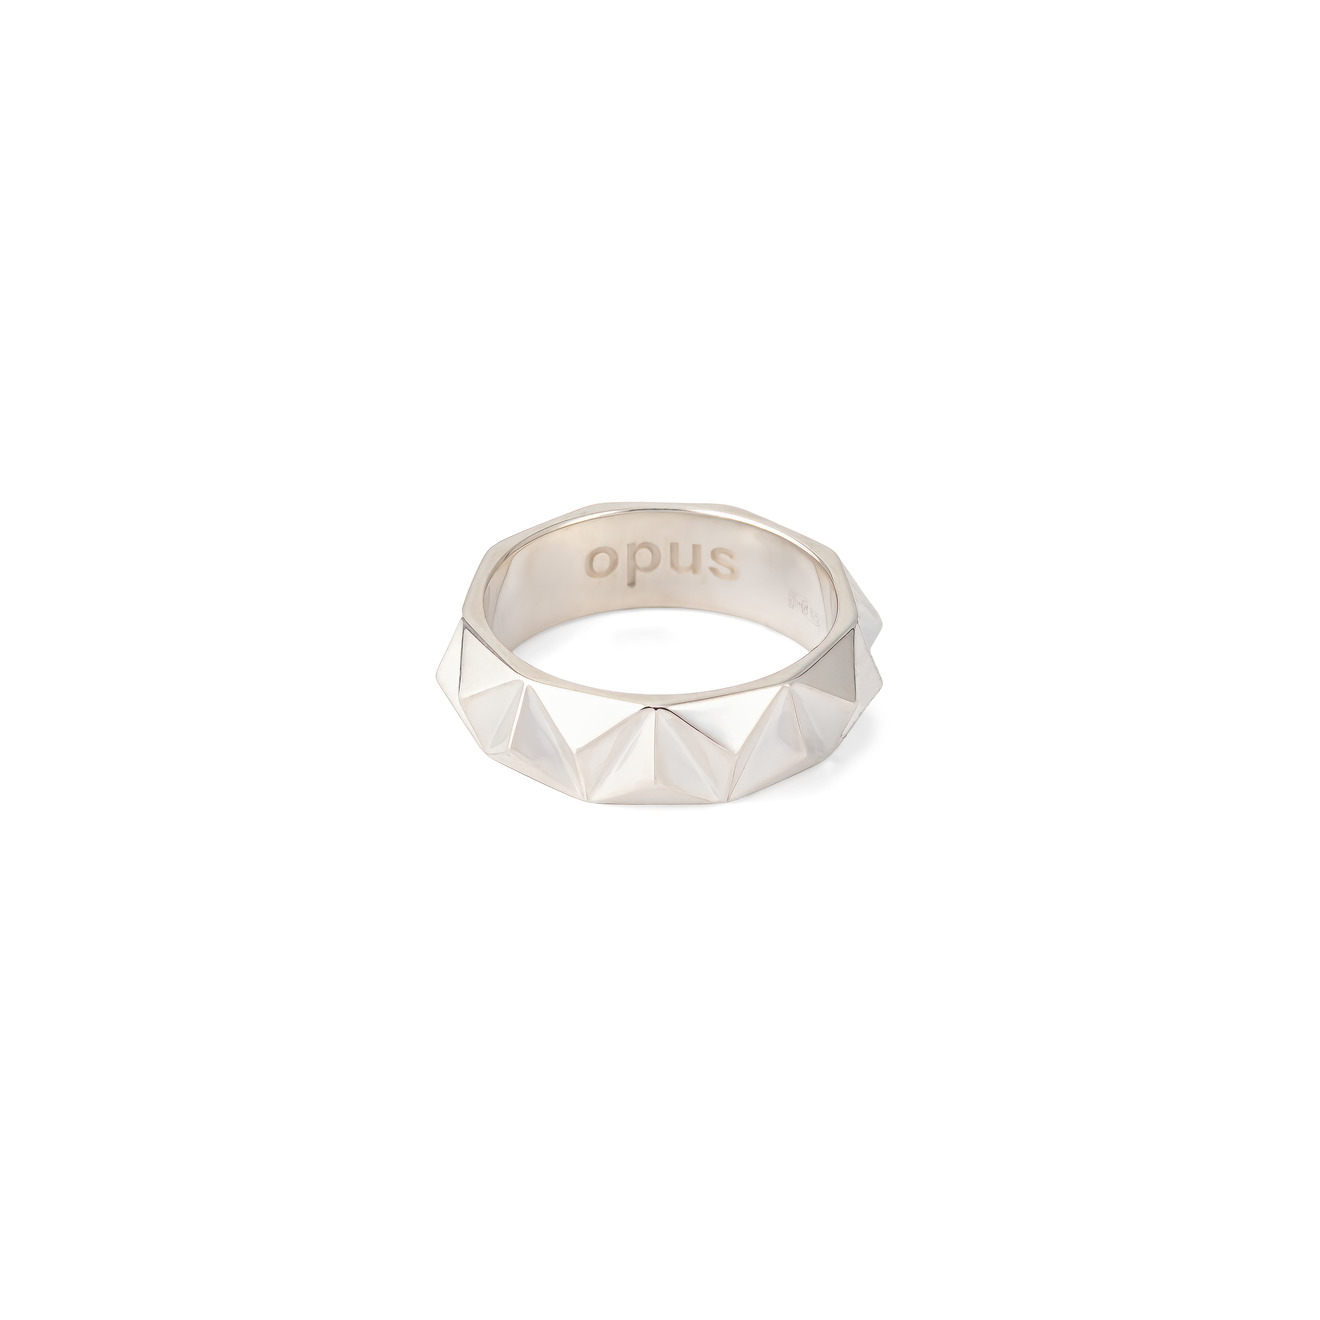 Opus Jewelry Кольцо из серебра с гранями Razor Band Ring 6.5 мм opus jewelry моносерьга из серебра net cross earring с цитрином